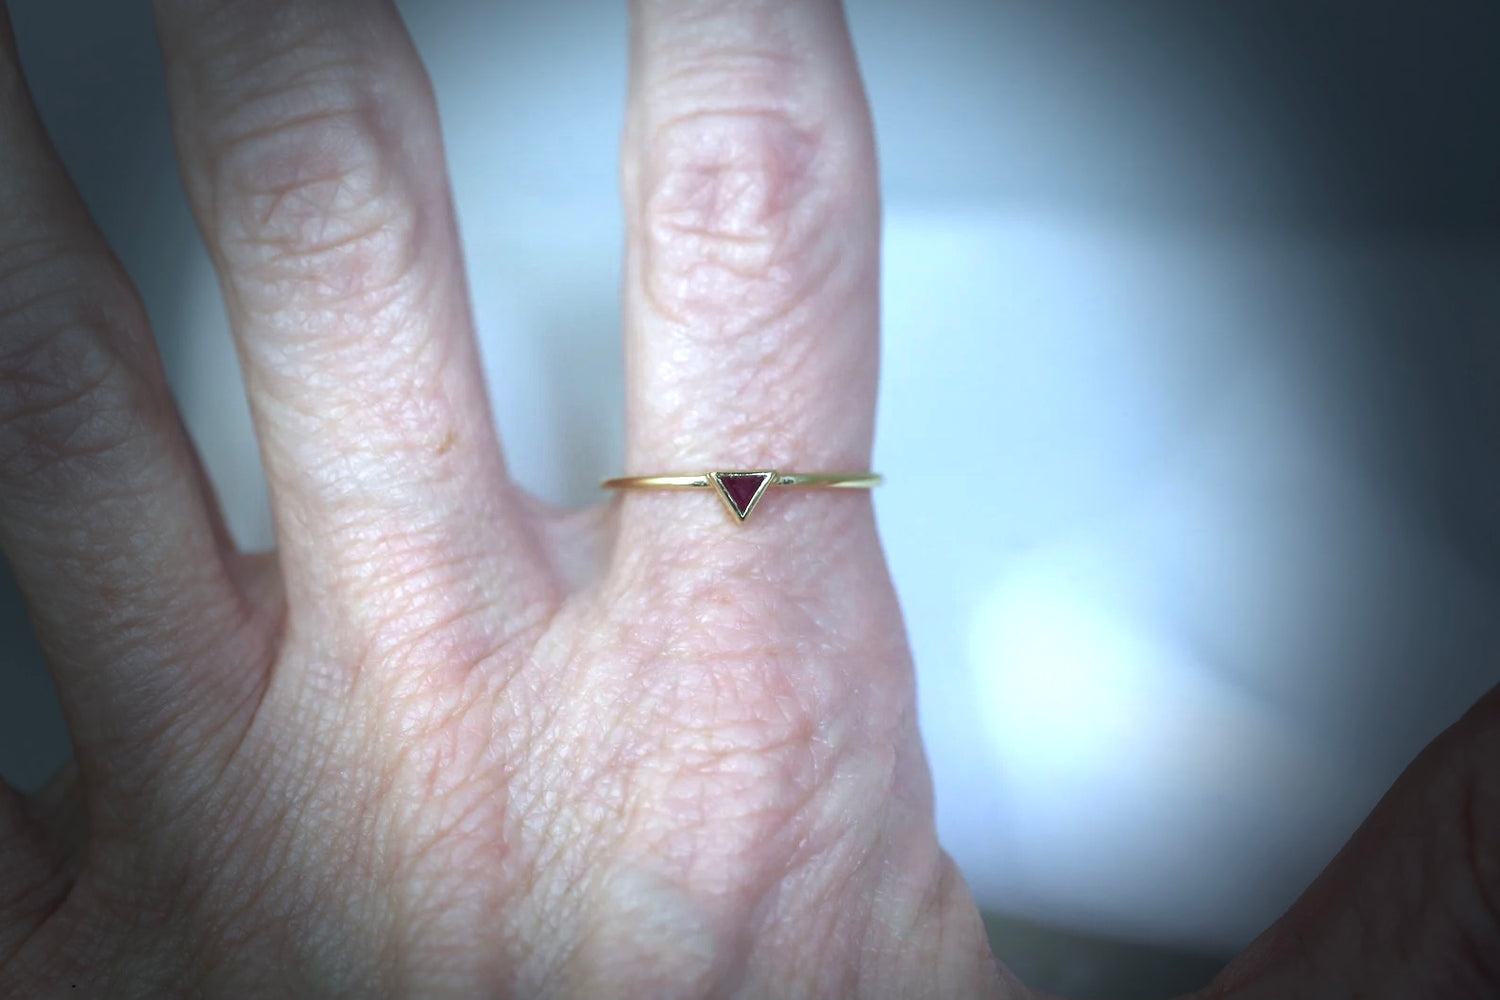 Tiny 14K Gold Triangle Ruby Ring | AVIE Fine Jewelry